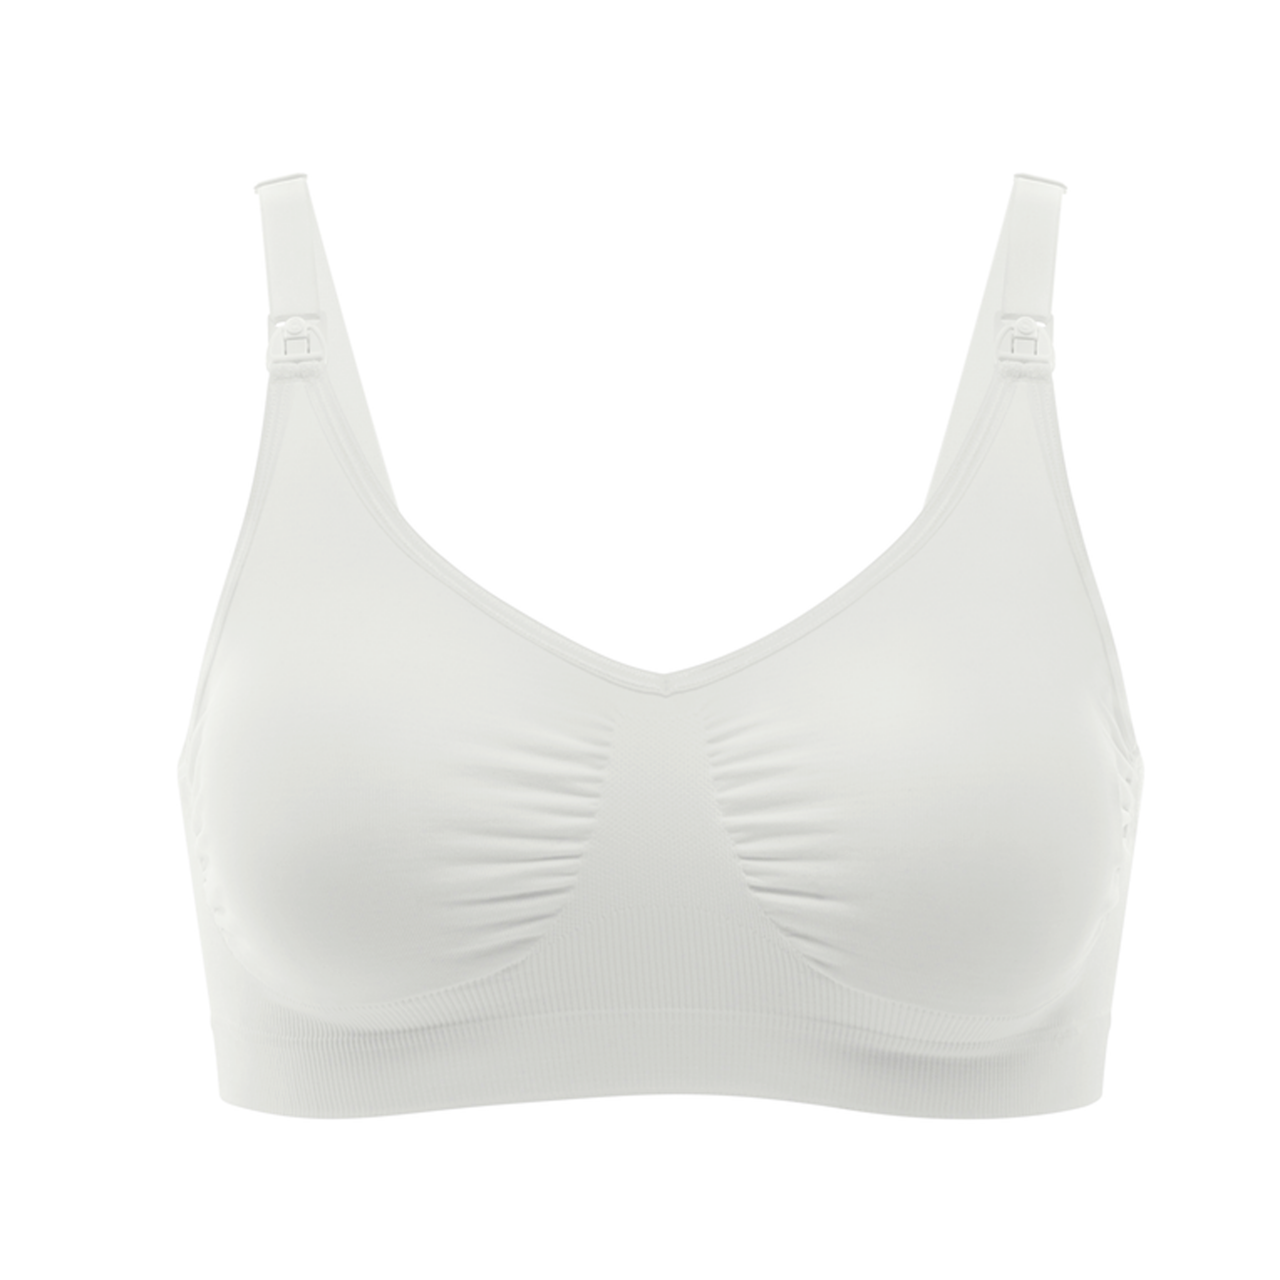 Бюстгальтер medela nursing bra дородовый и послеродовый, белый фото